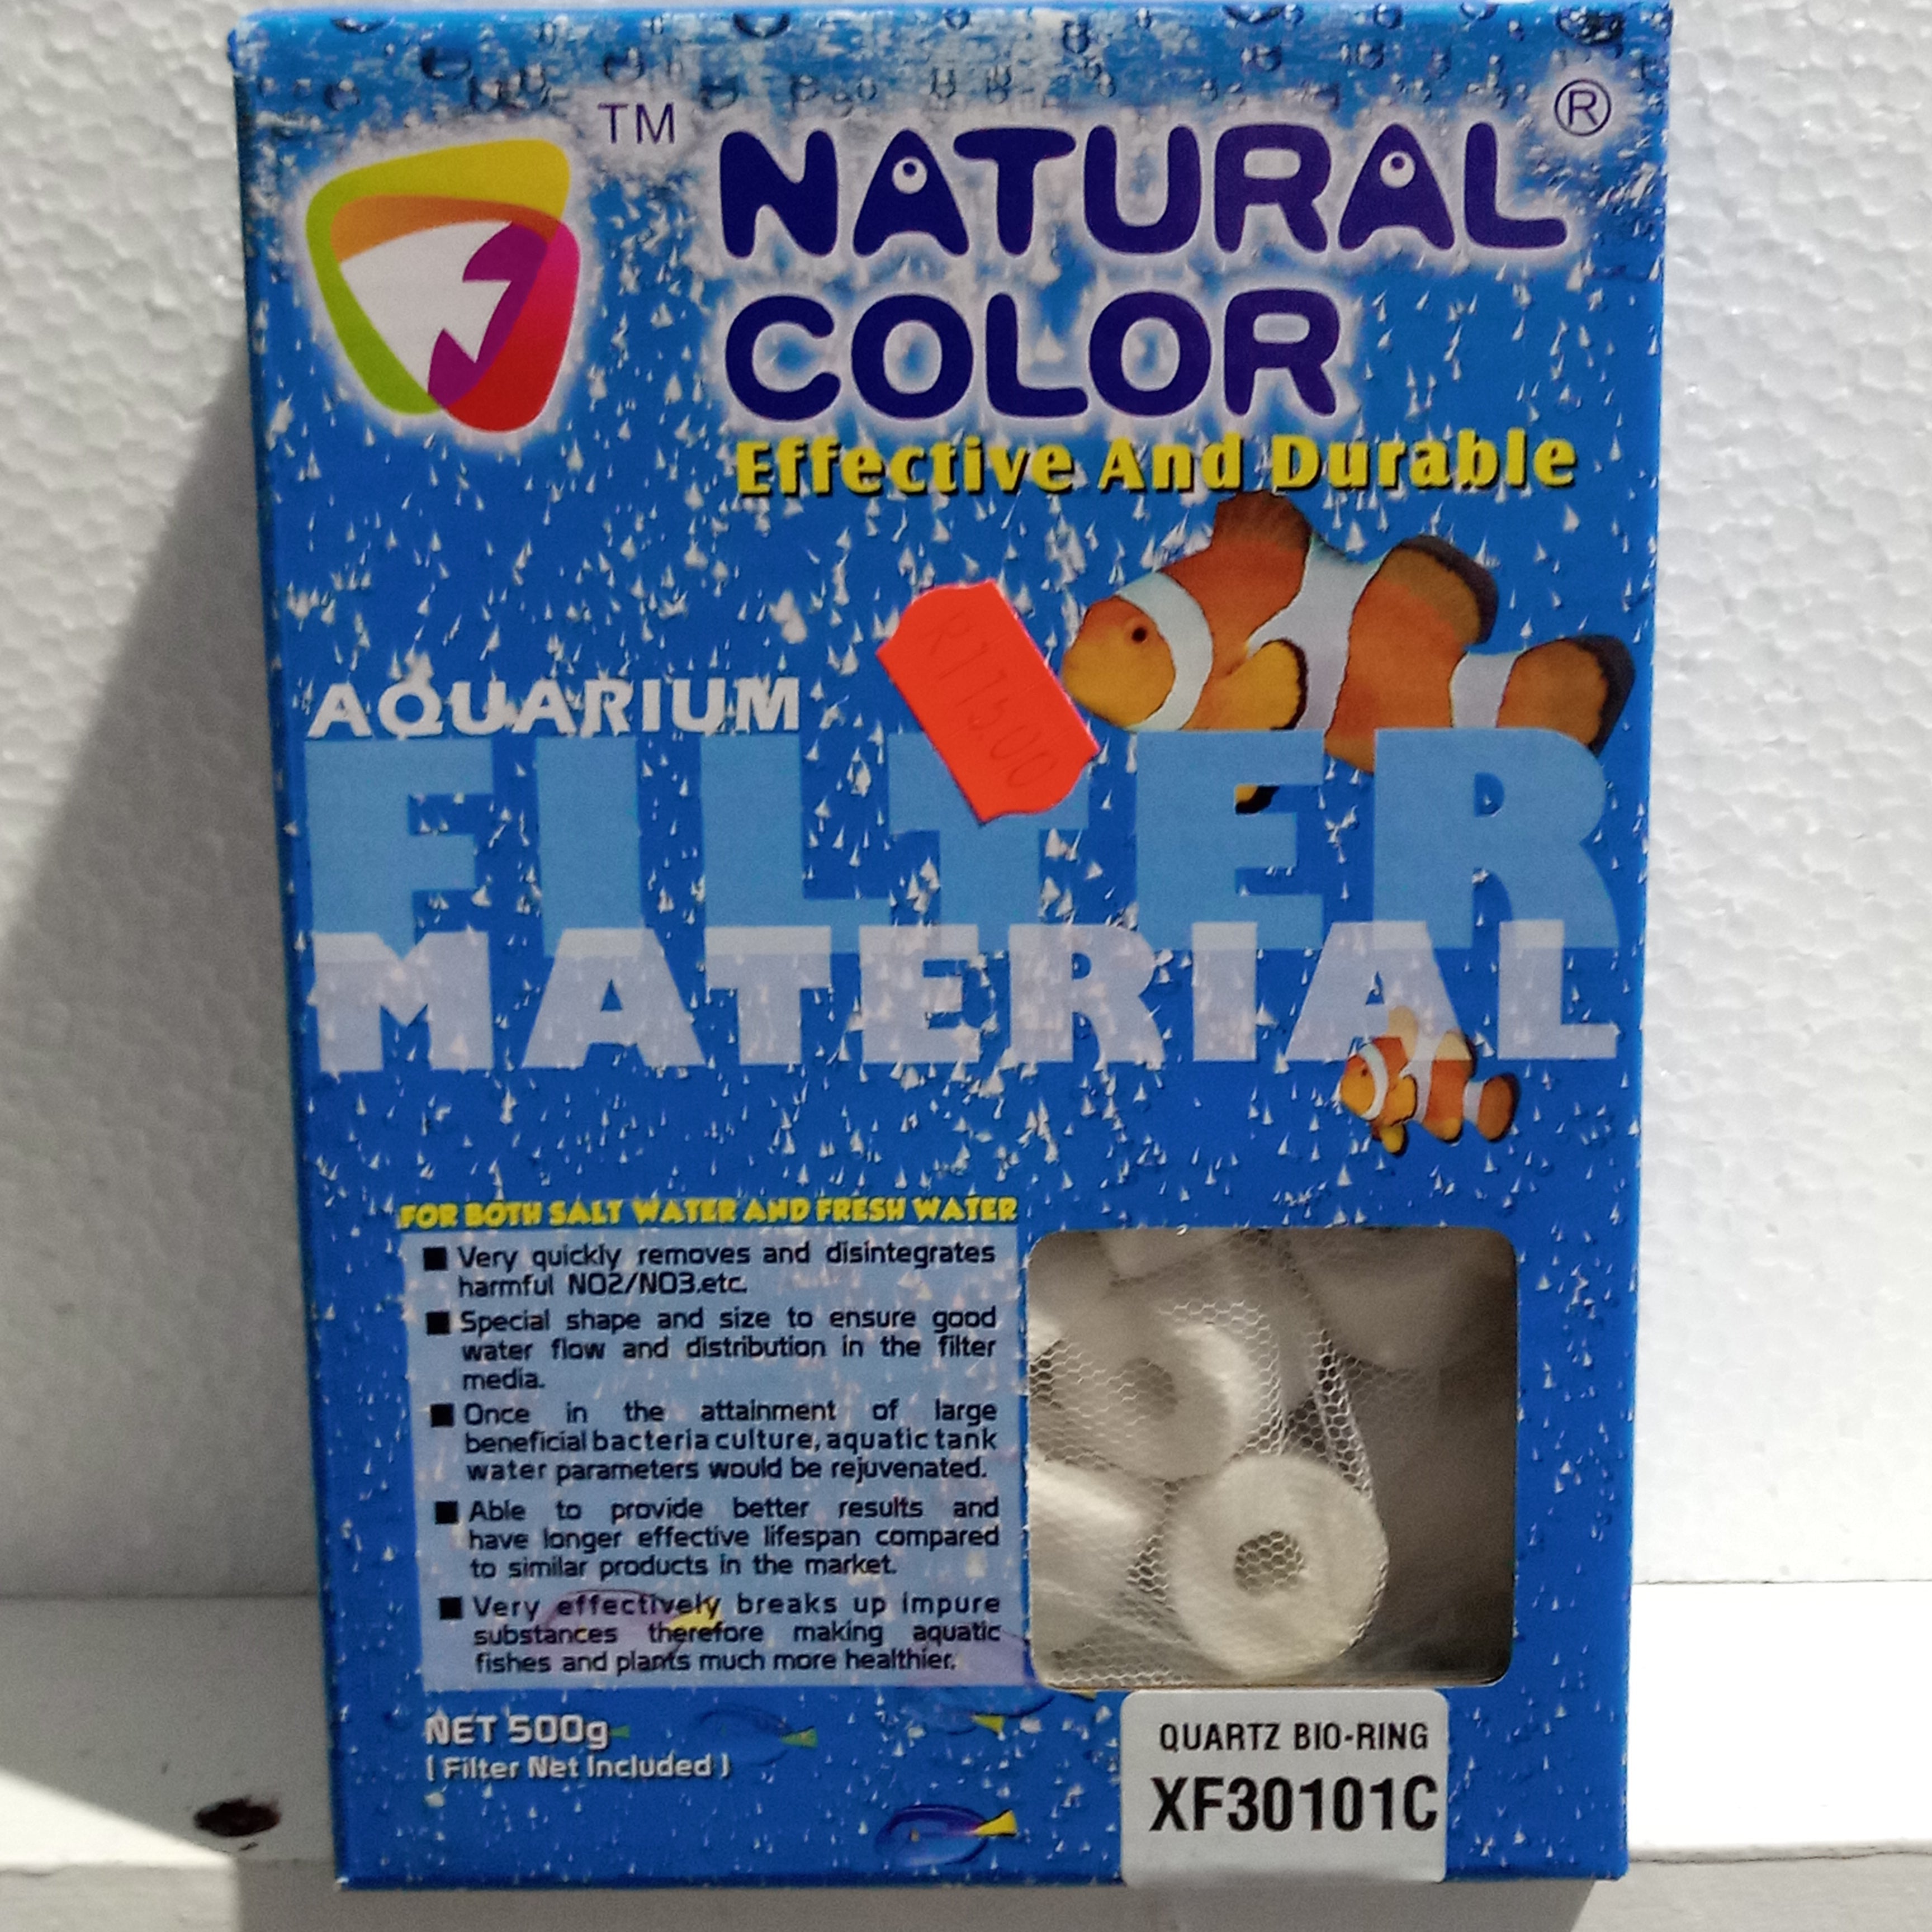 Natural Color Quartz Bio-Ring - XF30101C